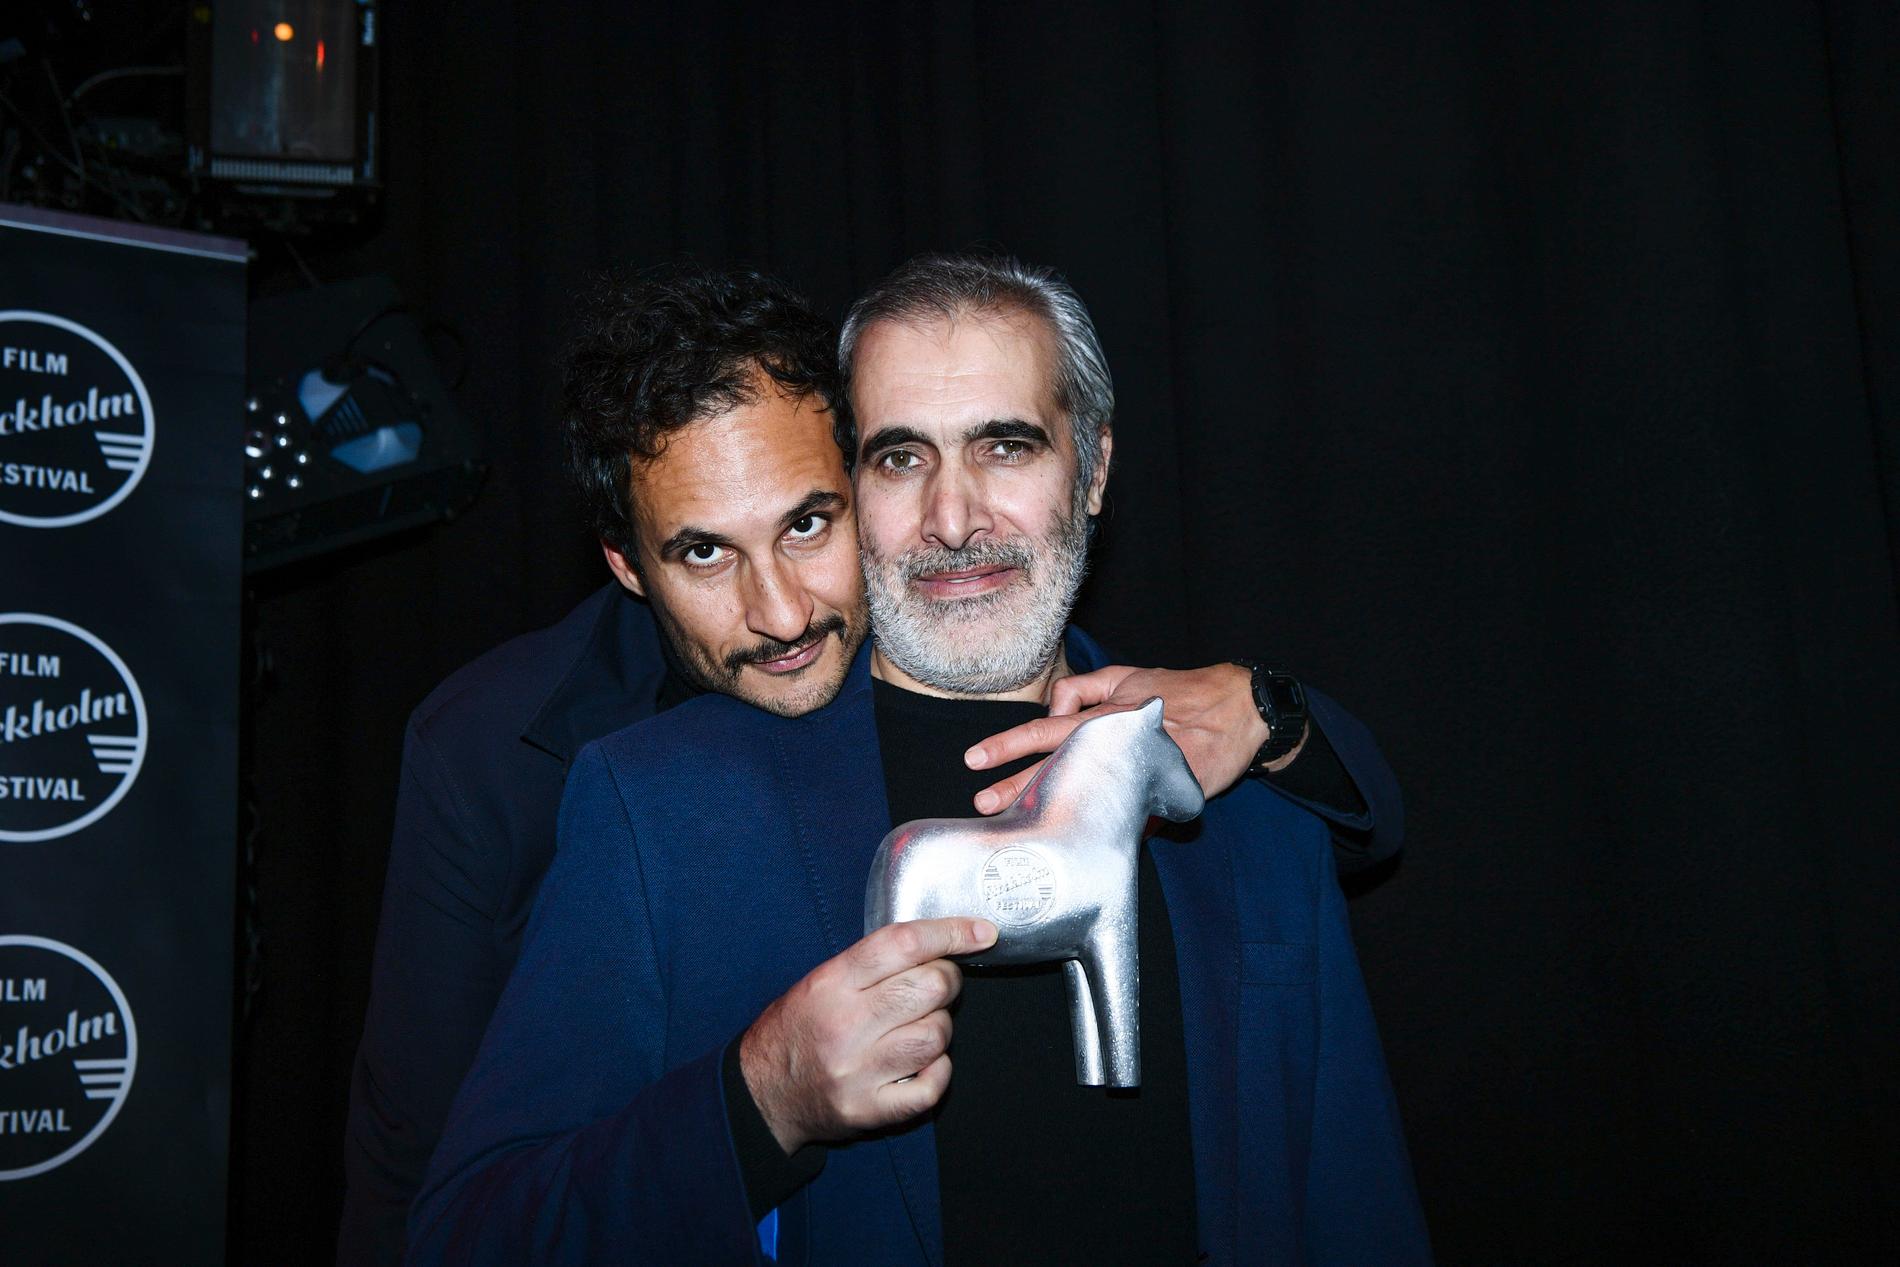 Ali Abbasis, vinnare av priset för Bästa film för "Holy spider", och Mehdi Bajestani, vinnare av priset Bästa manliga skådespelare för sin roll i ”Holy Spider”.